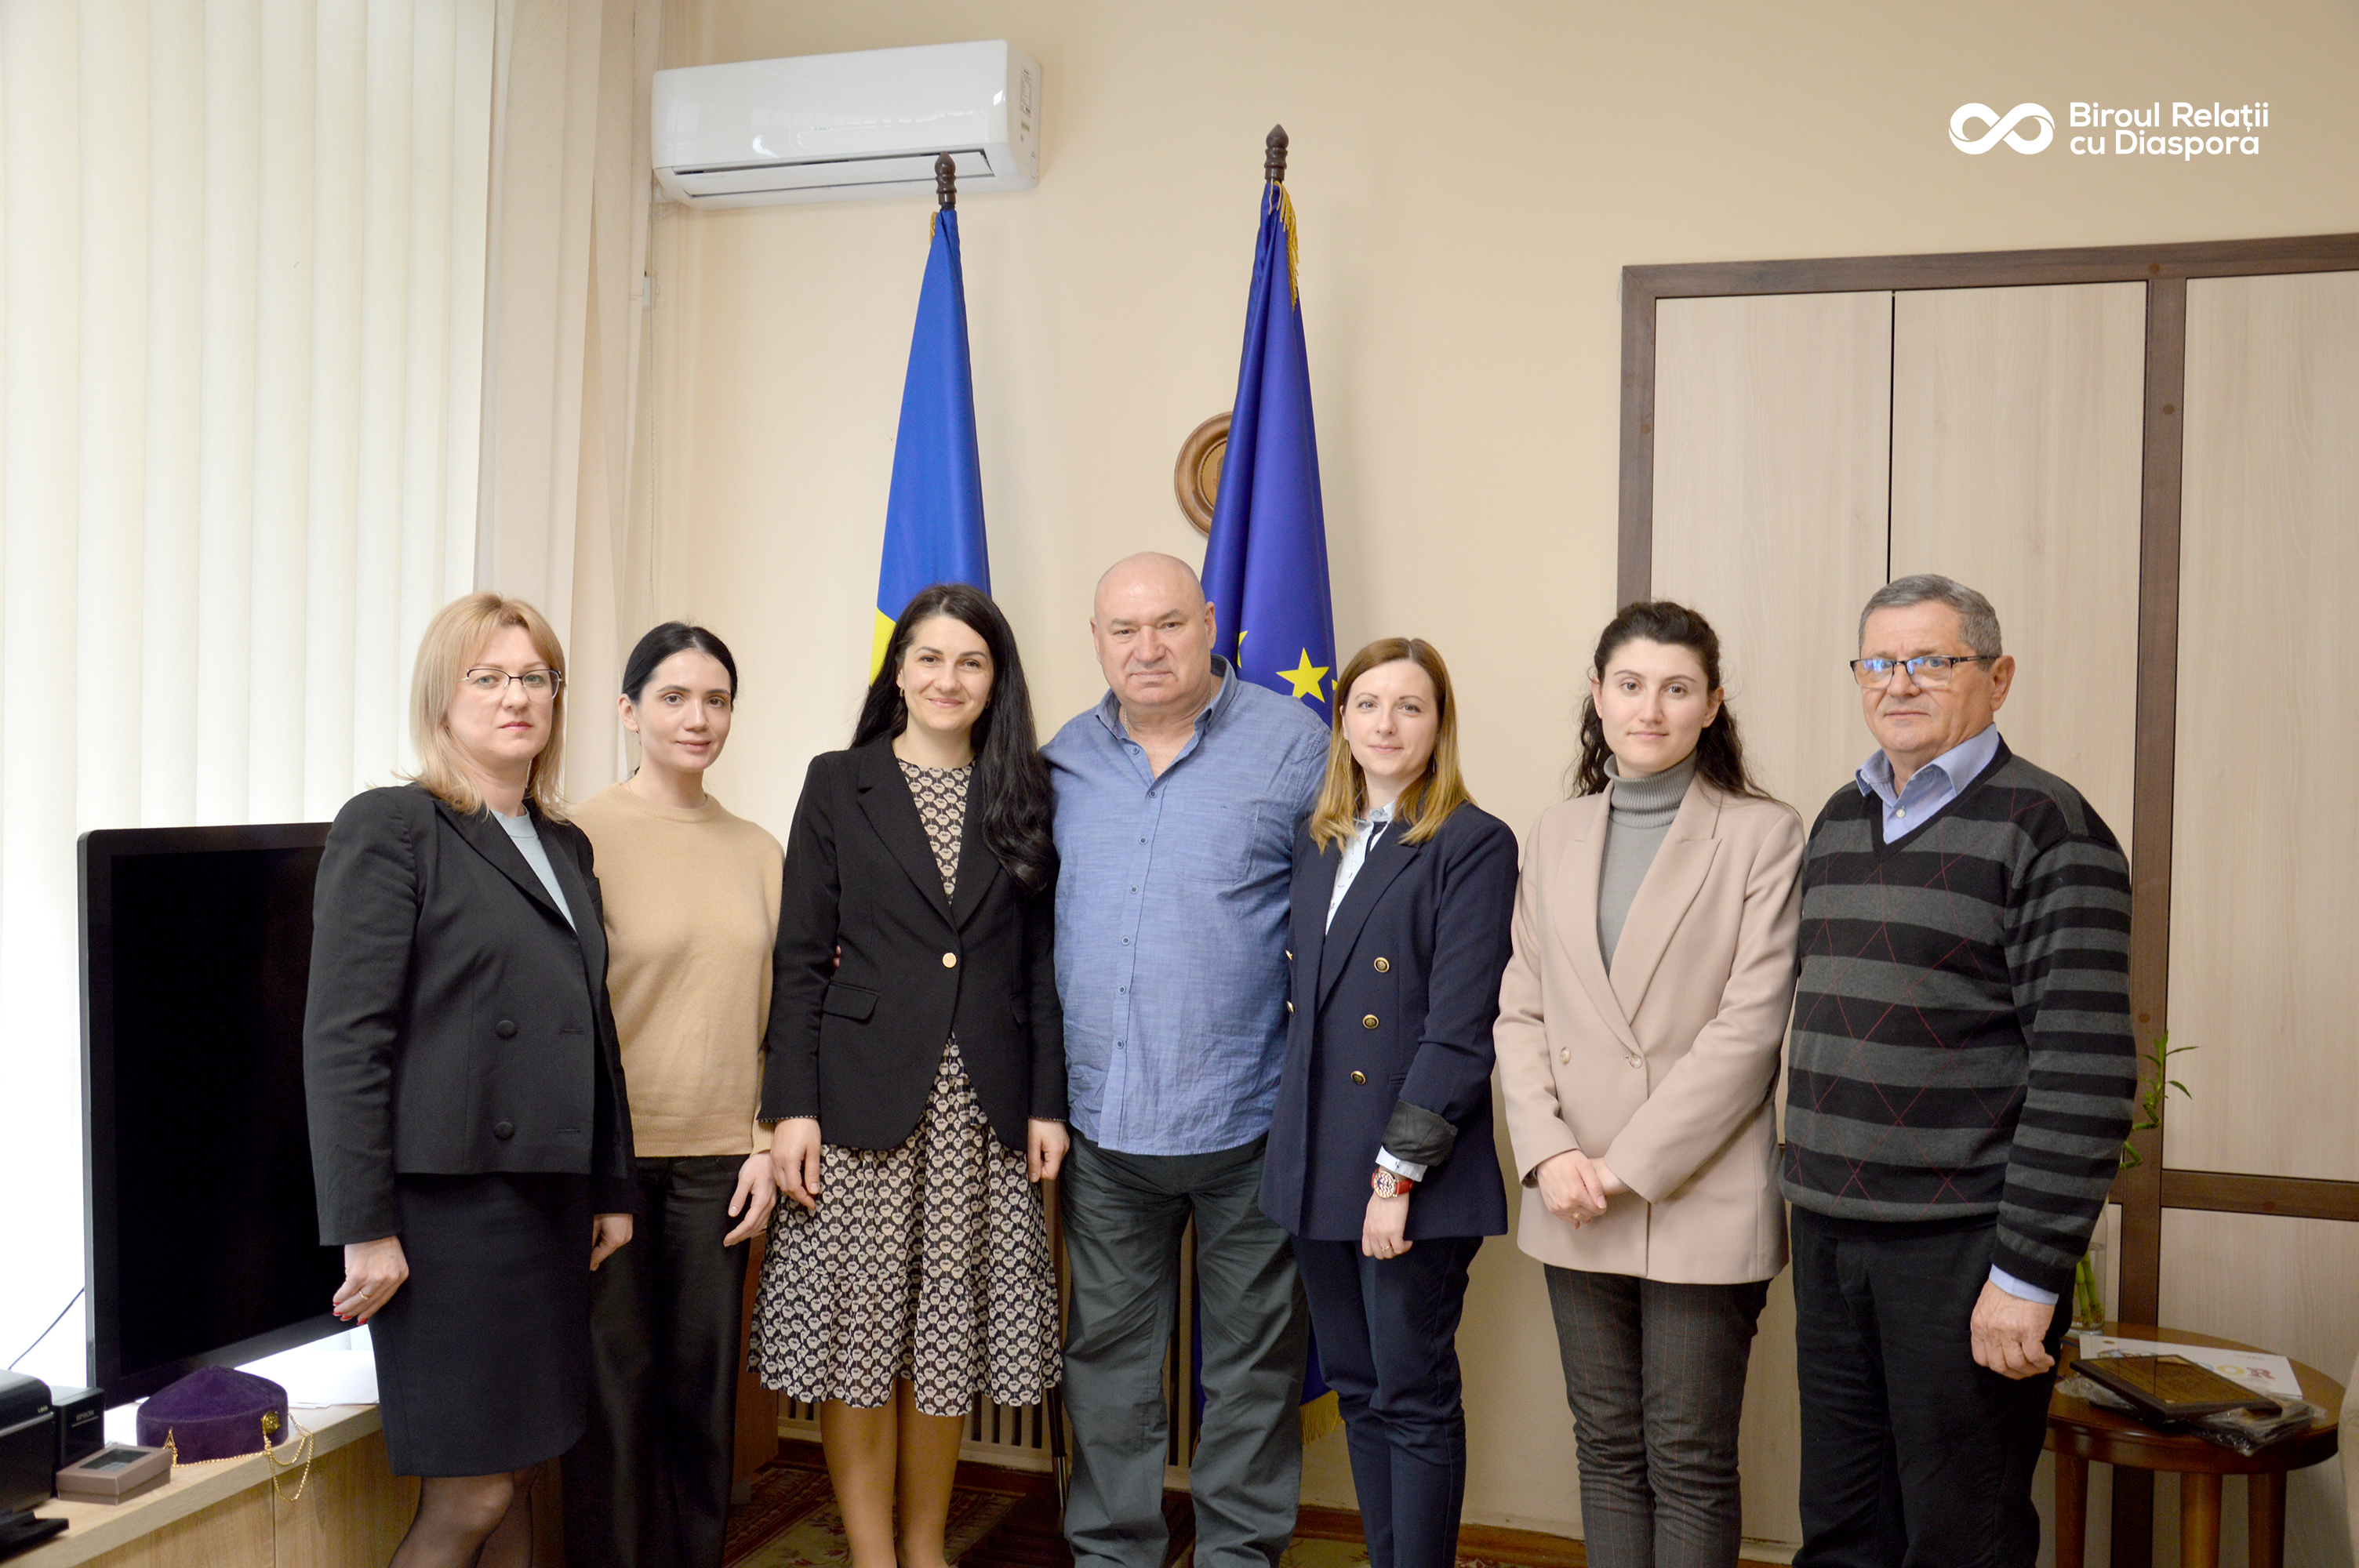 Бюро по связи с диаспорой посетил президент Культурного общества „Dacia” из Караганды, Казахстан